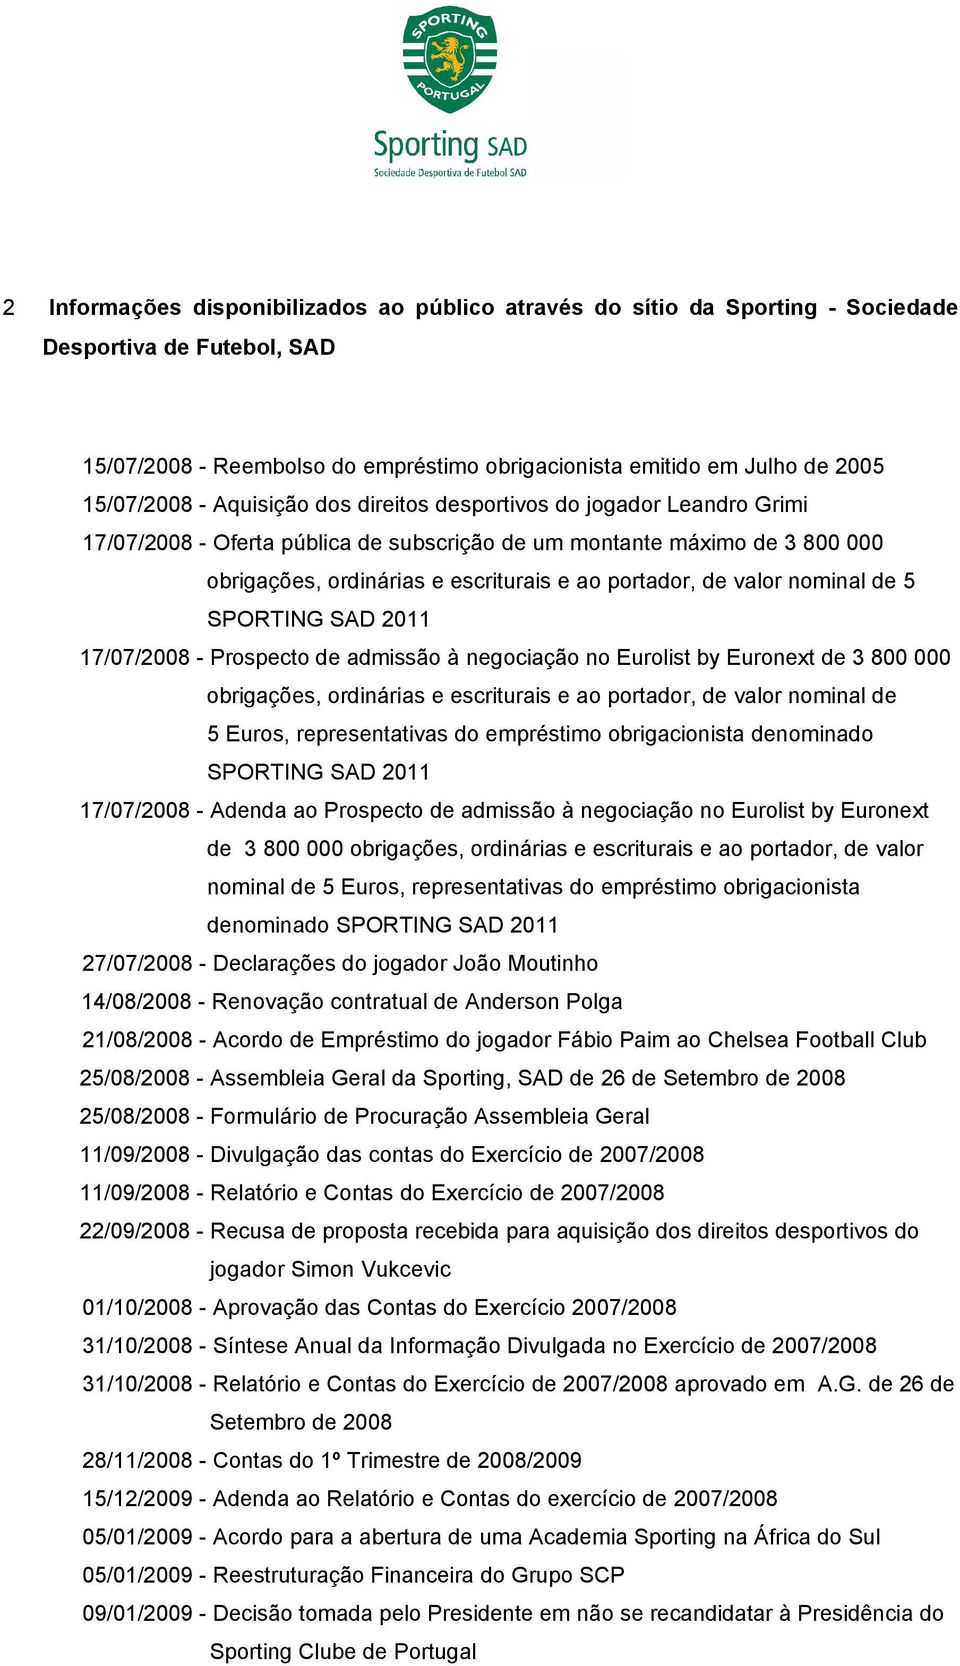 nominal de 5 17/07/2008 - Prospecto de admissão à negociação no Eurolist by Euronext de 3 800 000 obrigações, ordinárias e escriturais e ao portador, de valor nominal de 5 Euros, representativas do